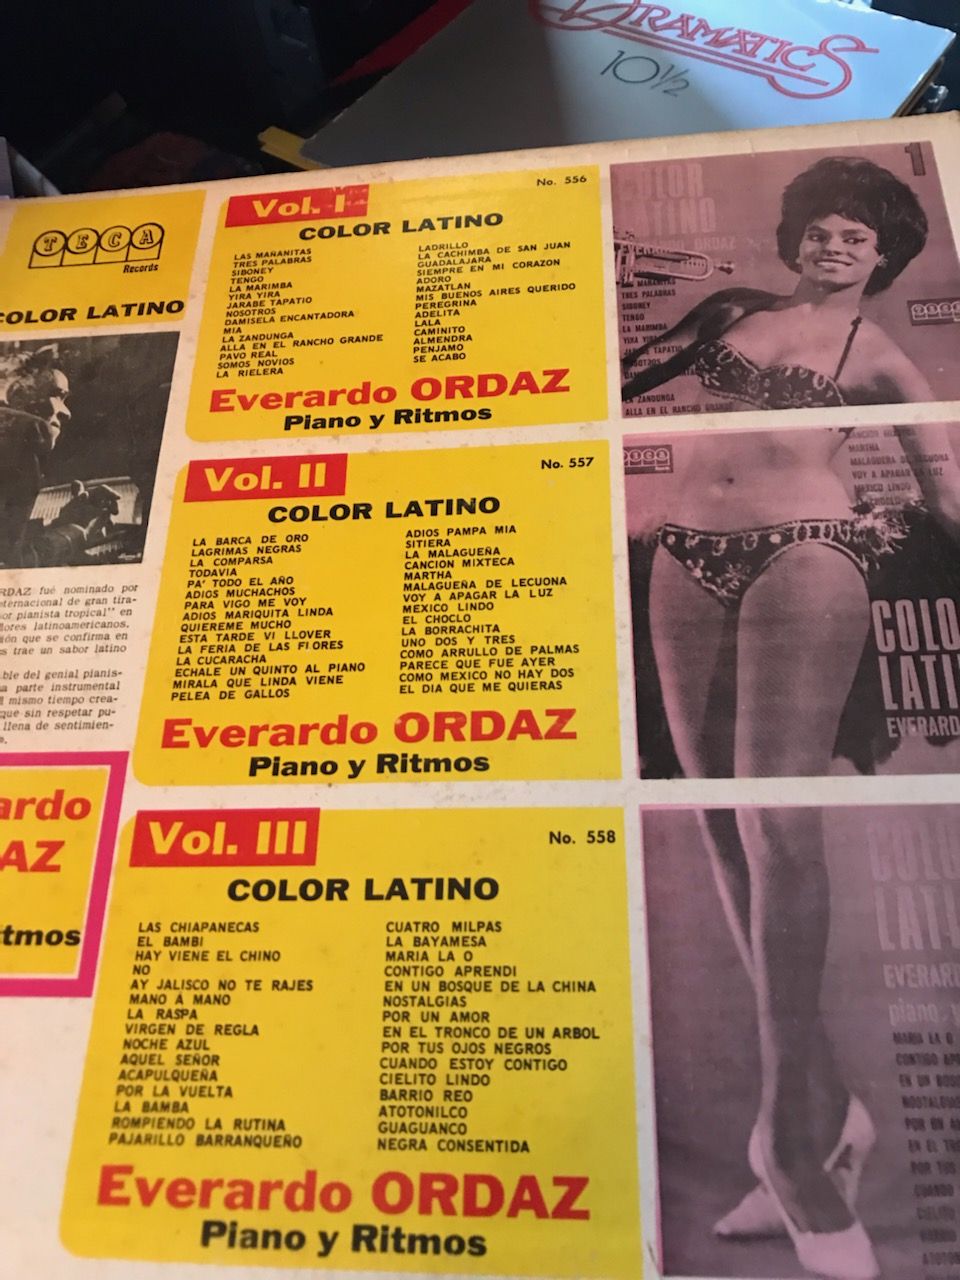 Everardo Ordaz - Color Latino Vol. 1 Everardo Ordaz - C... 2